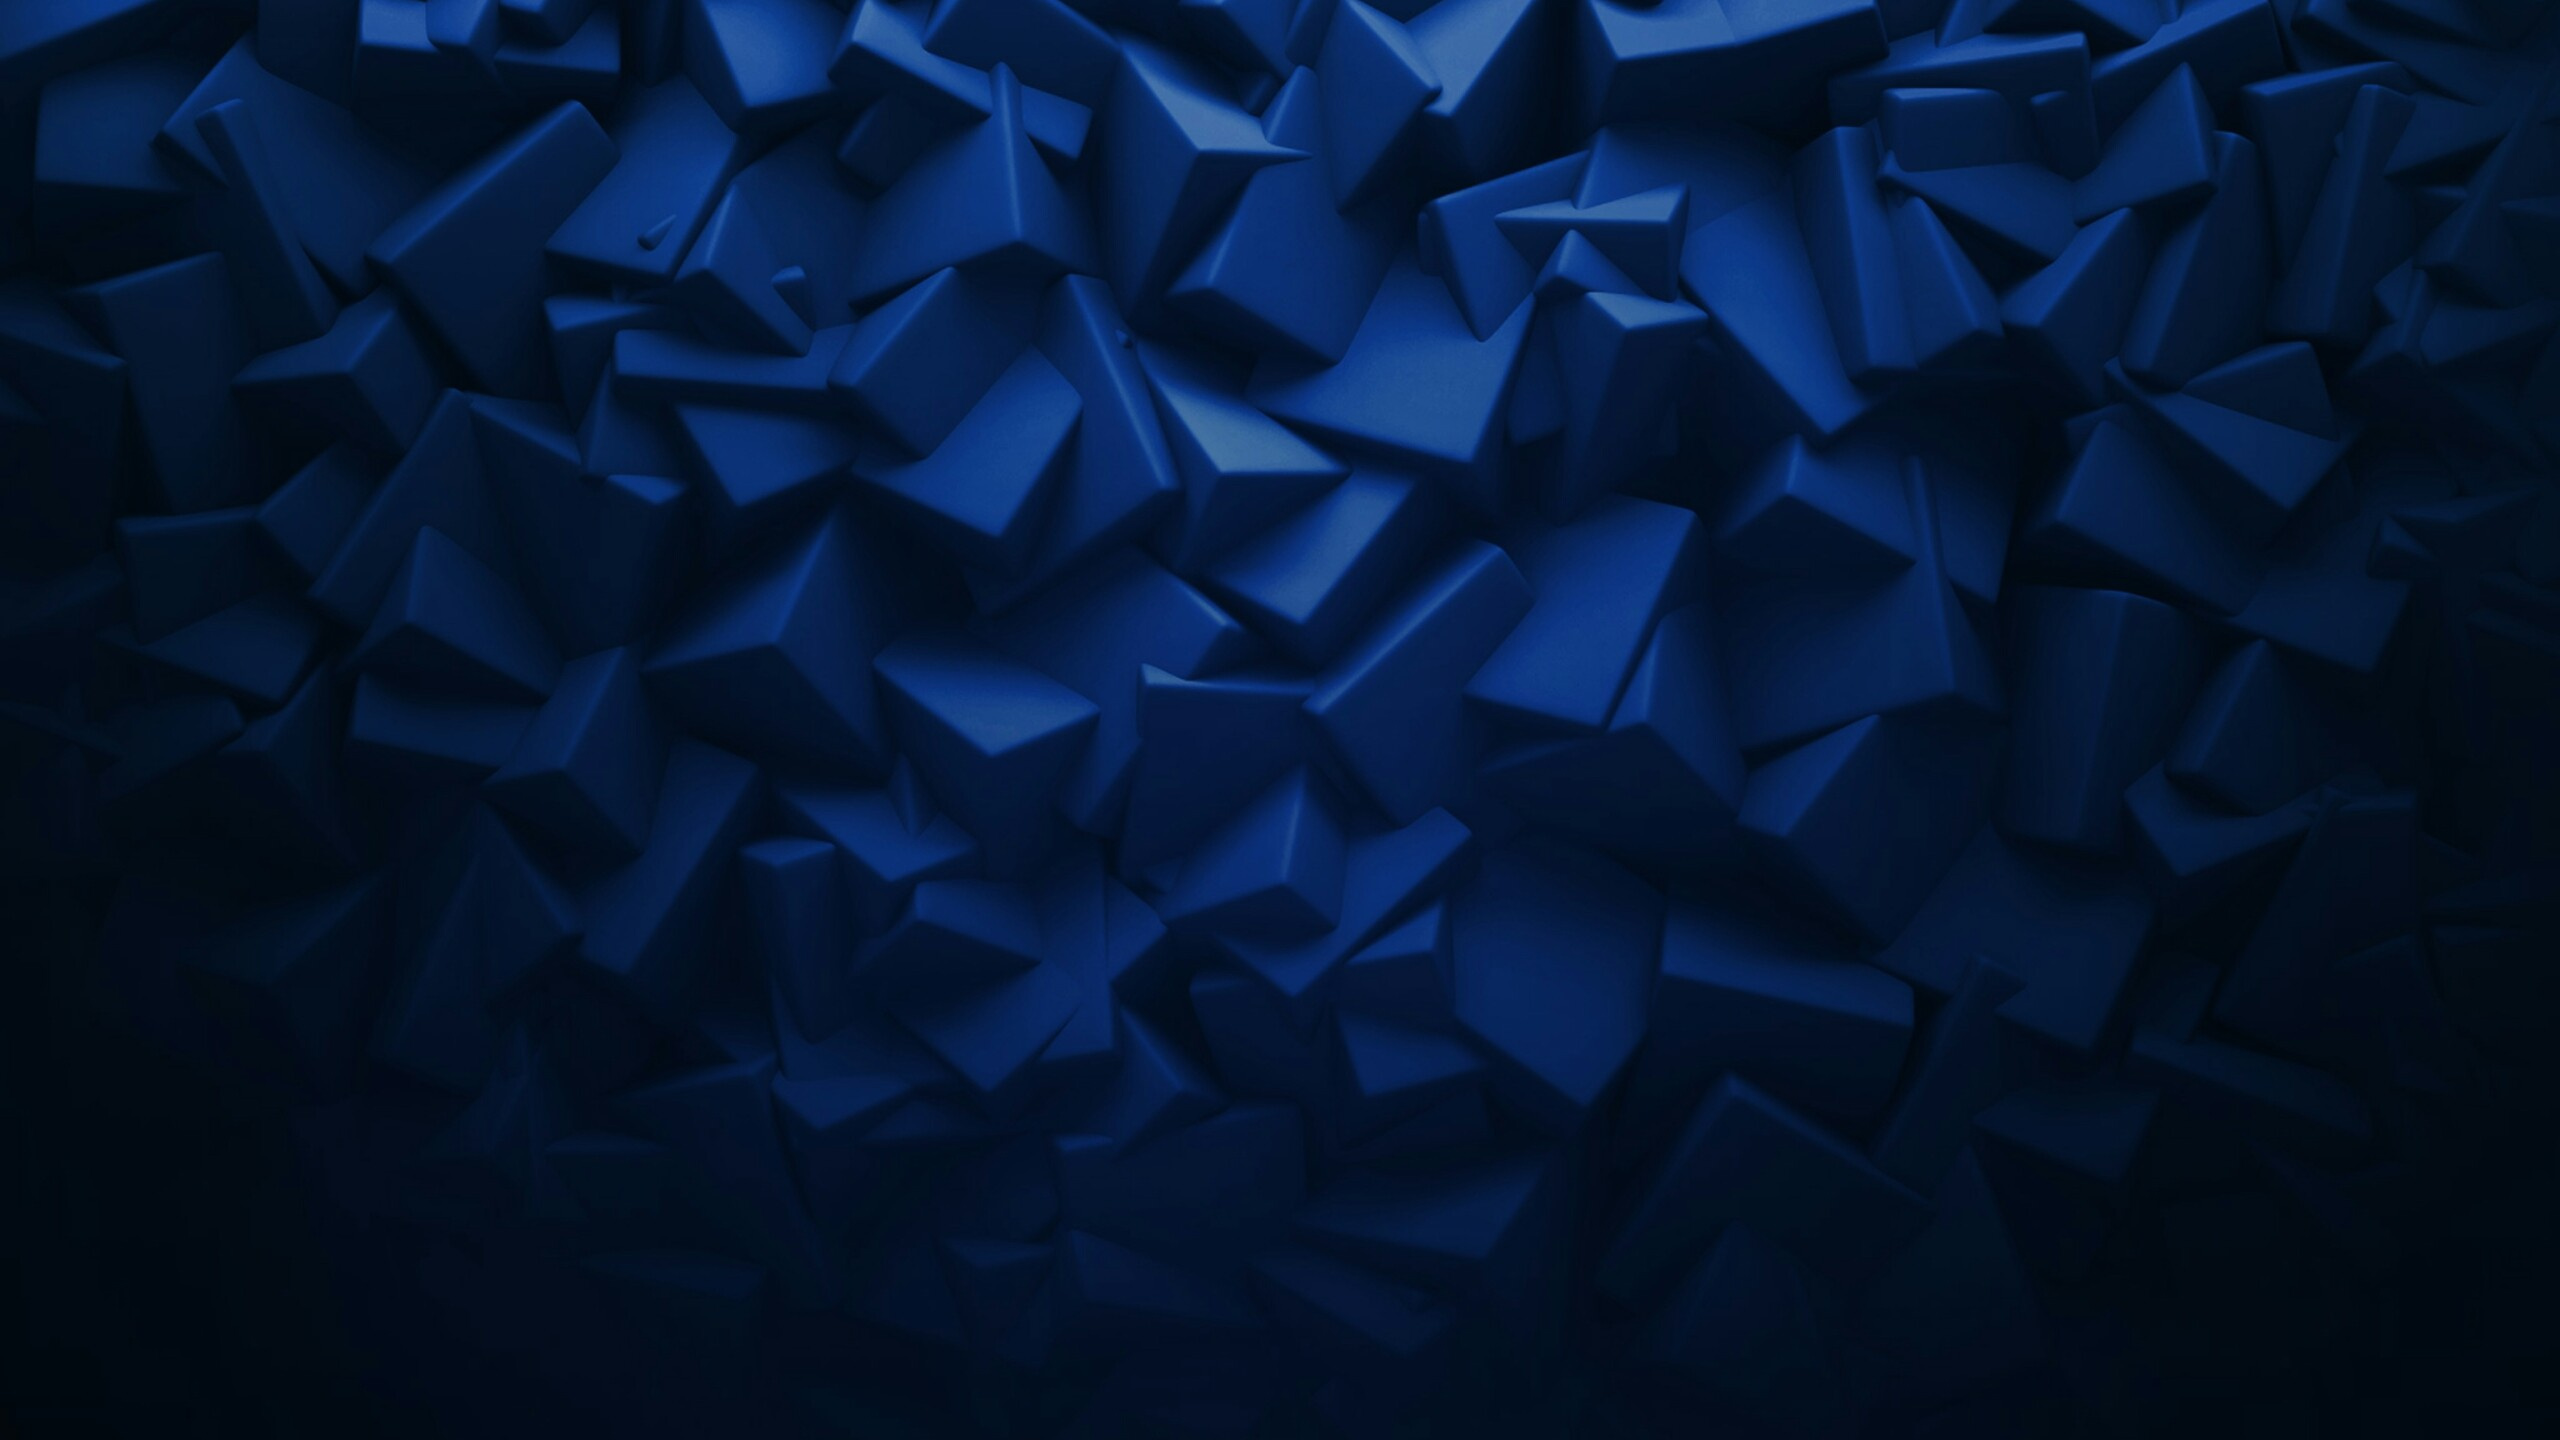 Blaue Und Weiße Sternabbildung. Wallpaper in 2560x1440 Resolution